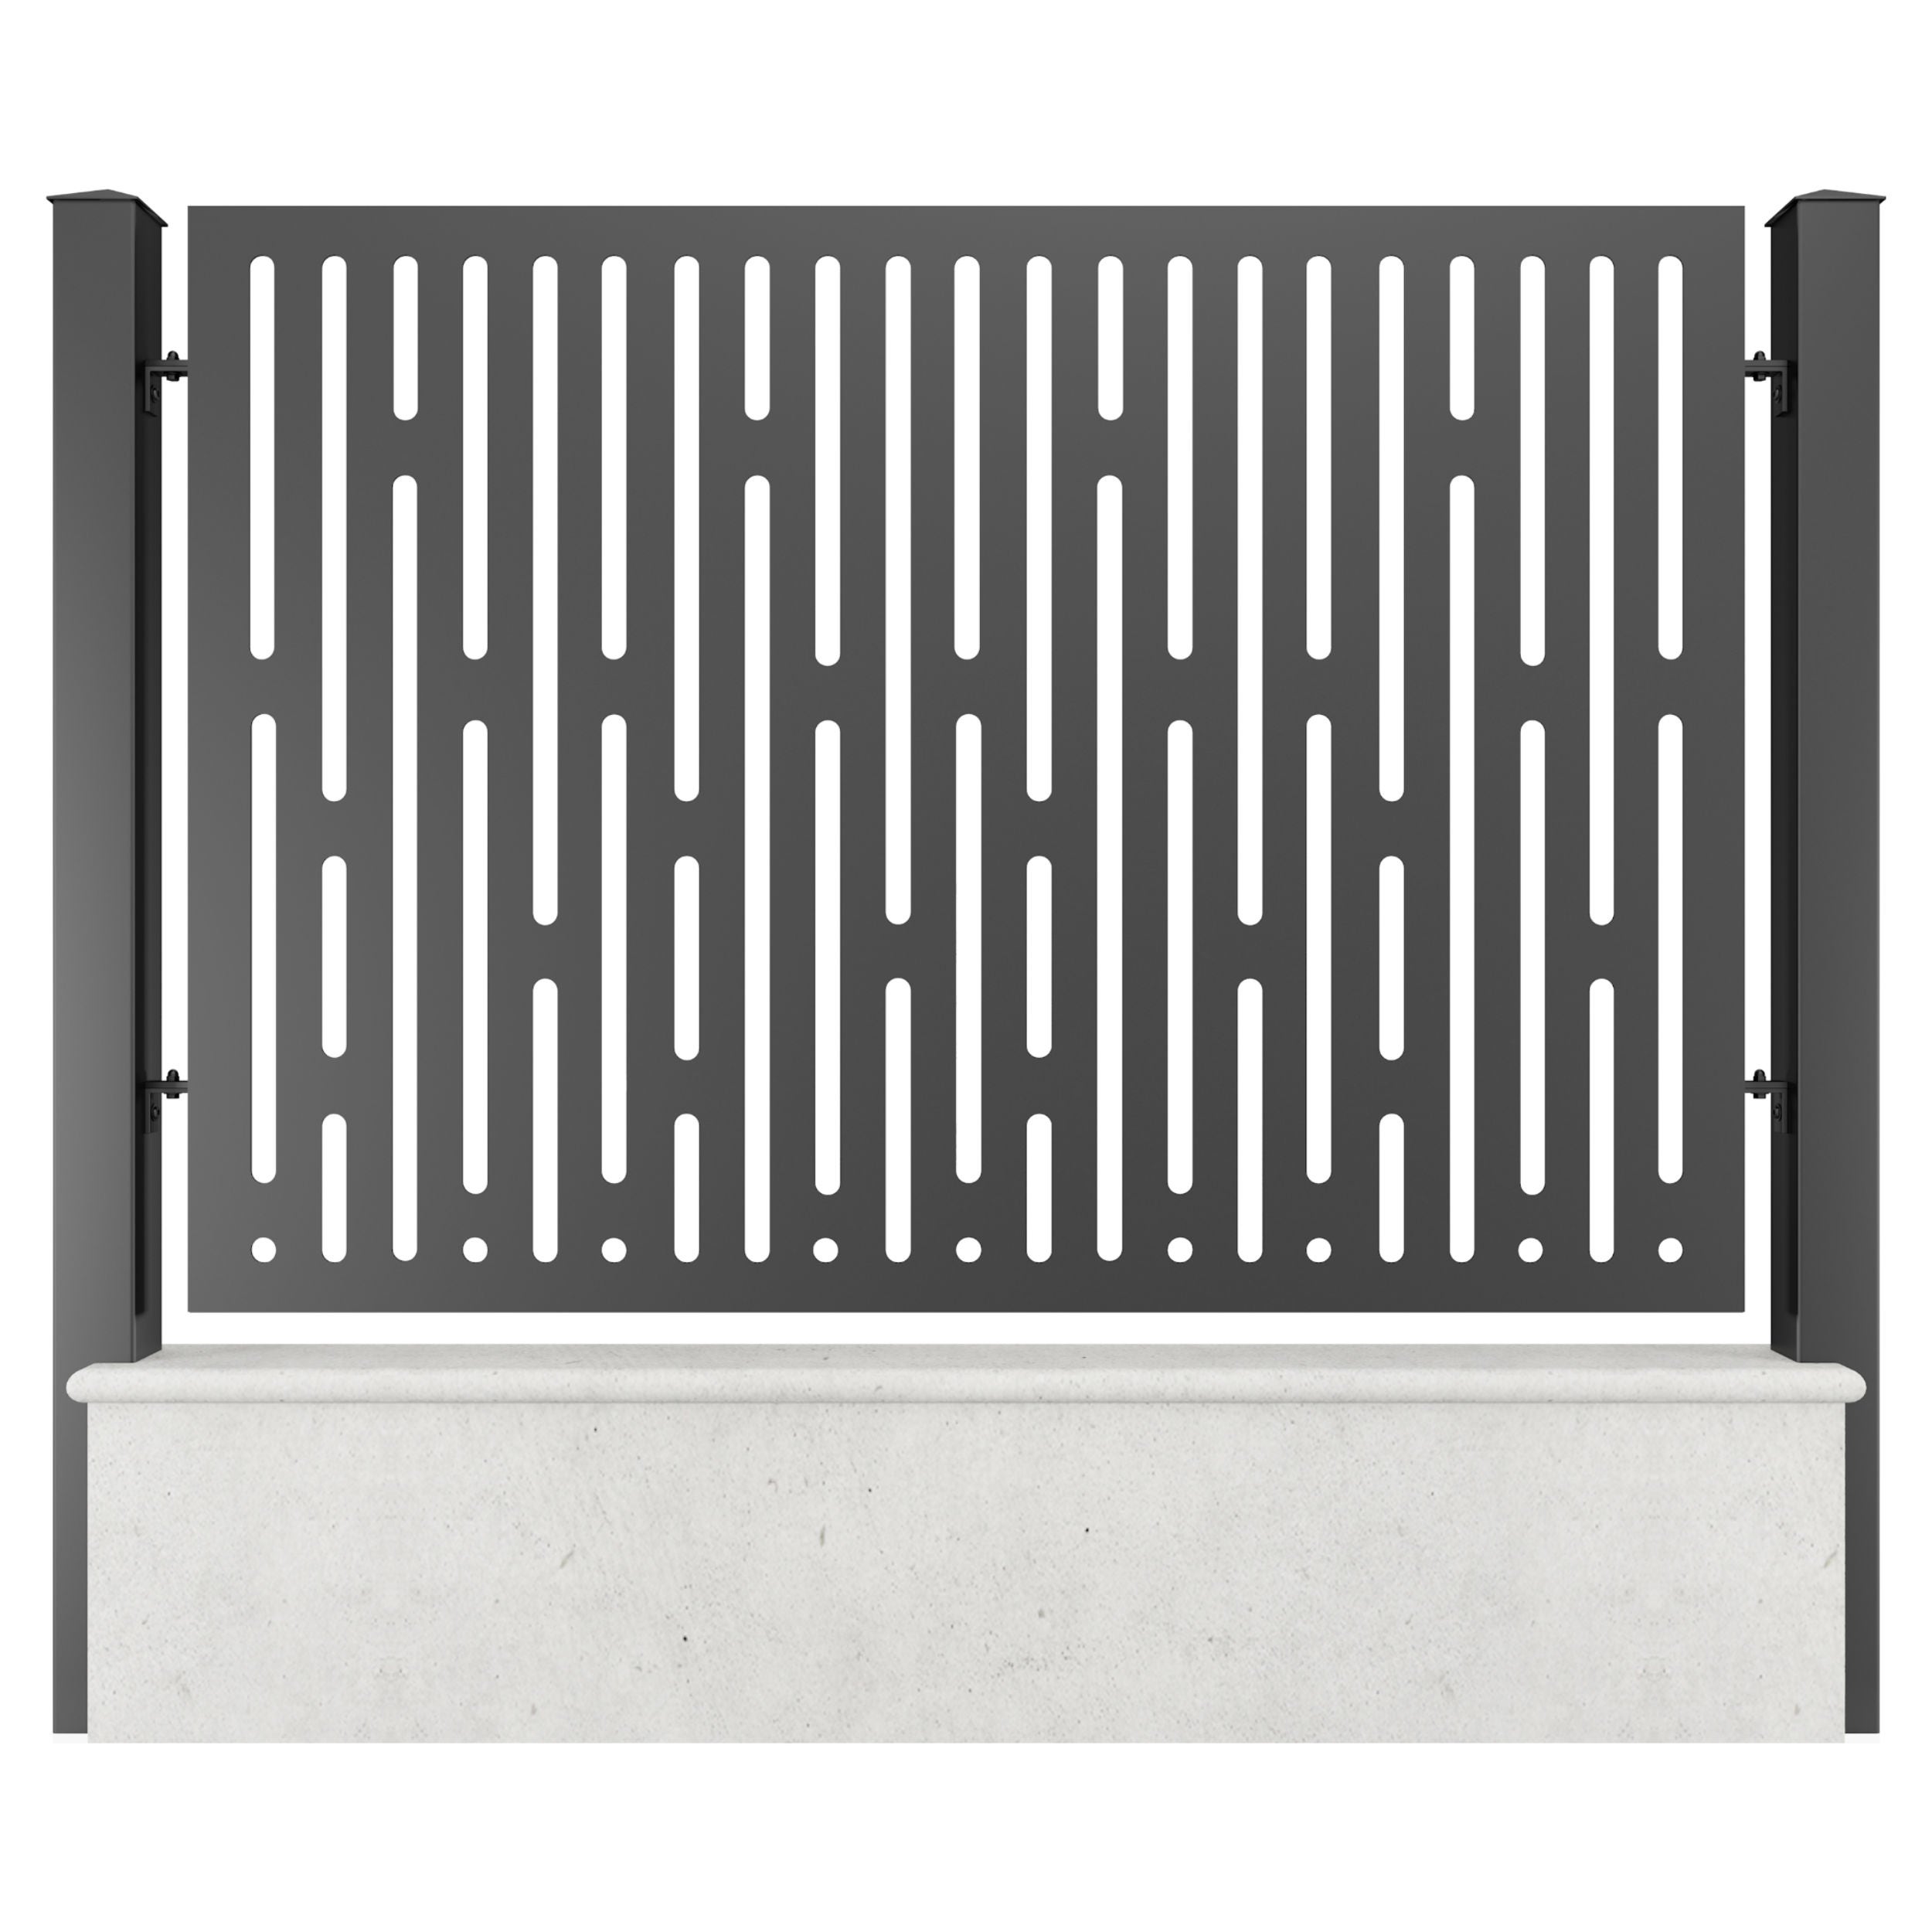 Panou metalic gard din tabla decupata G36B, otel, negru (RAL 9005), 2000 x 1500 mm